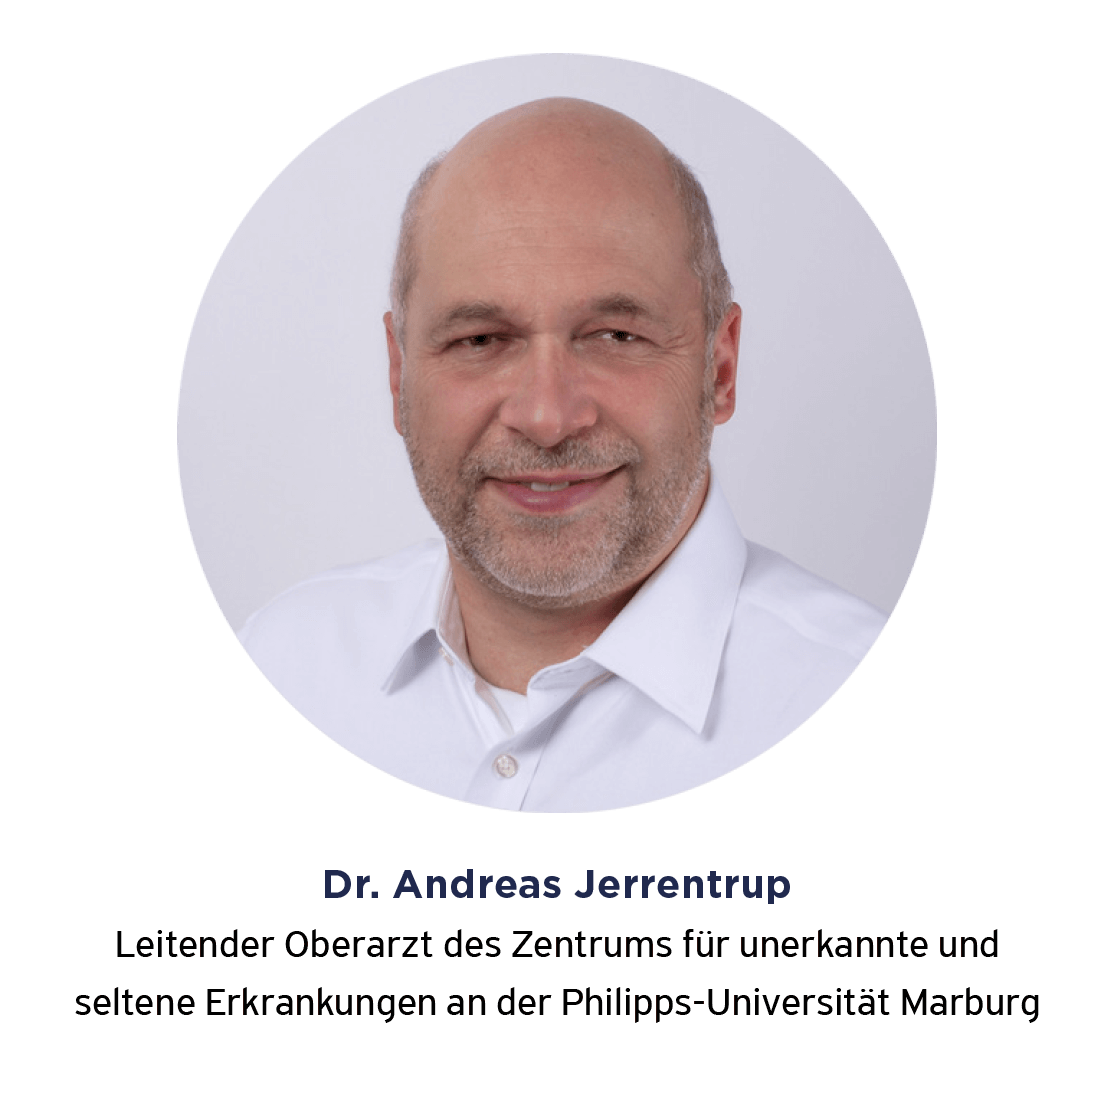 Porträt Dr. Andreas Jerrentrup, Leitender Oberarzt des Zentrums für unerkannte und seltene Erkrankungen an der Philipps-Universität Marburg